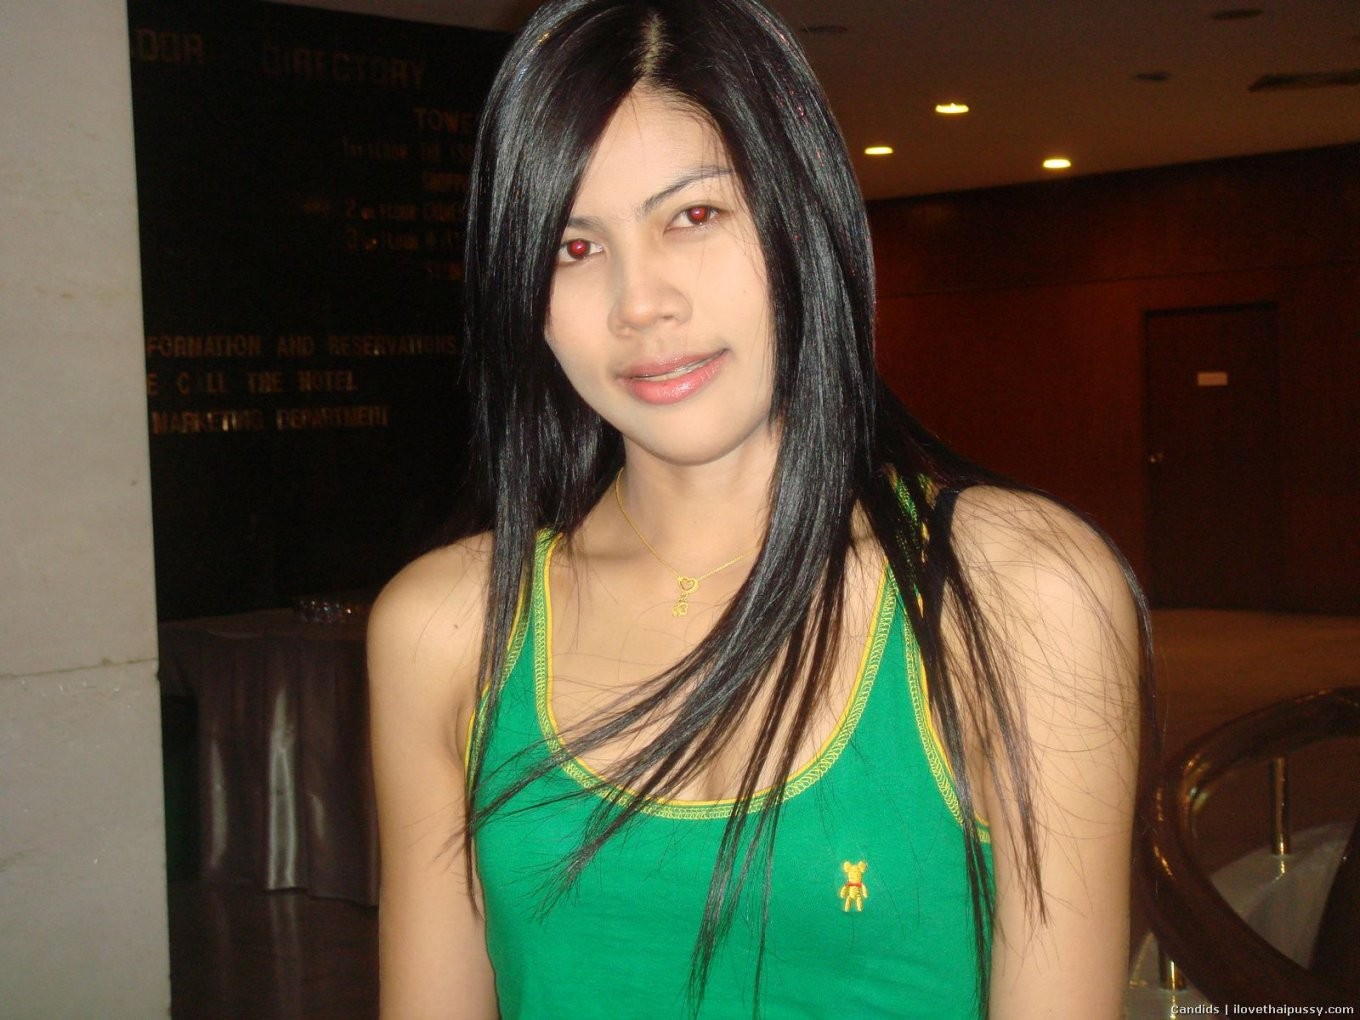 Sucia prostituta tailandesa ama el sexo anal sin condón con turistas sucios asiáticos amateu
 #68115704